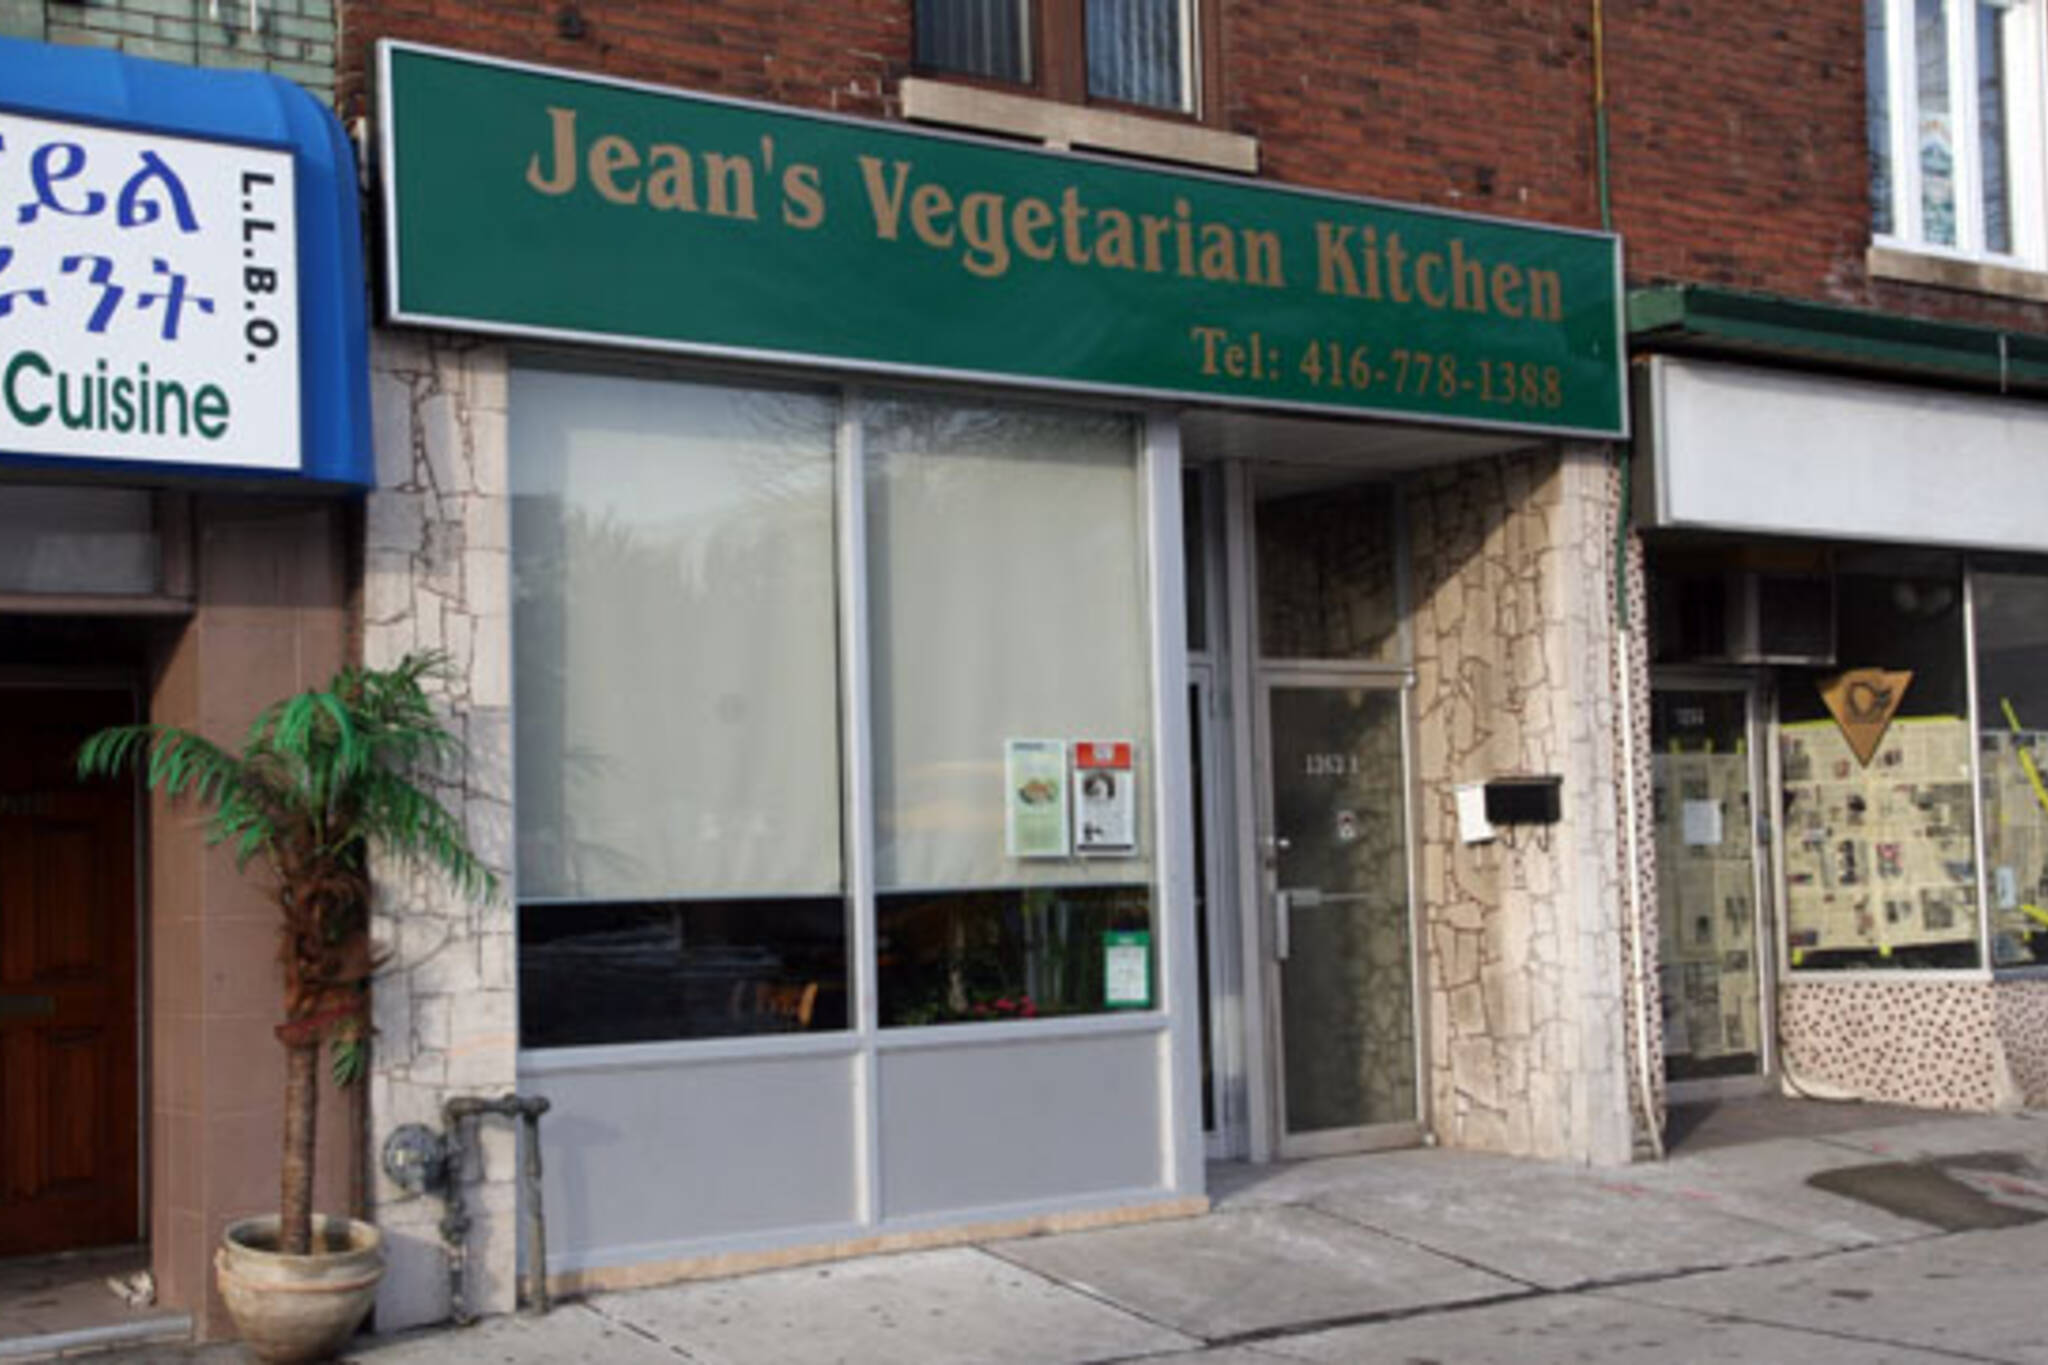 Jean's Vegetarian